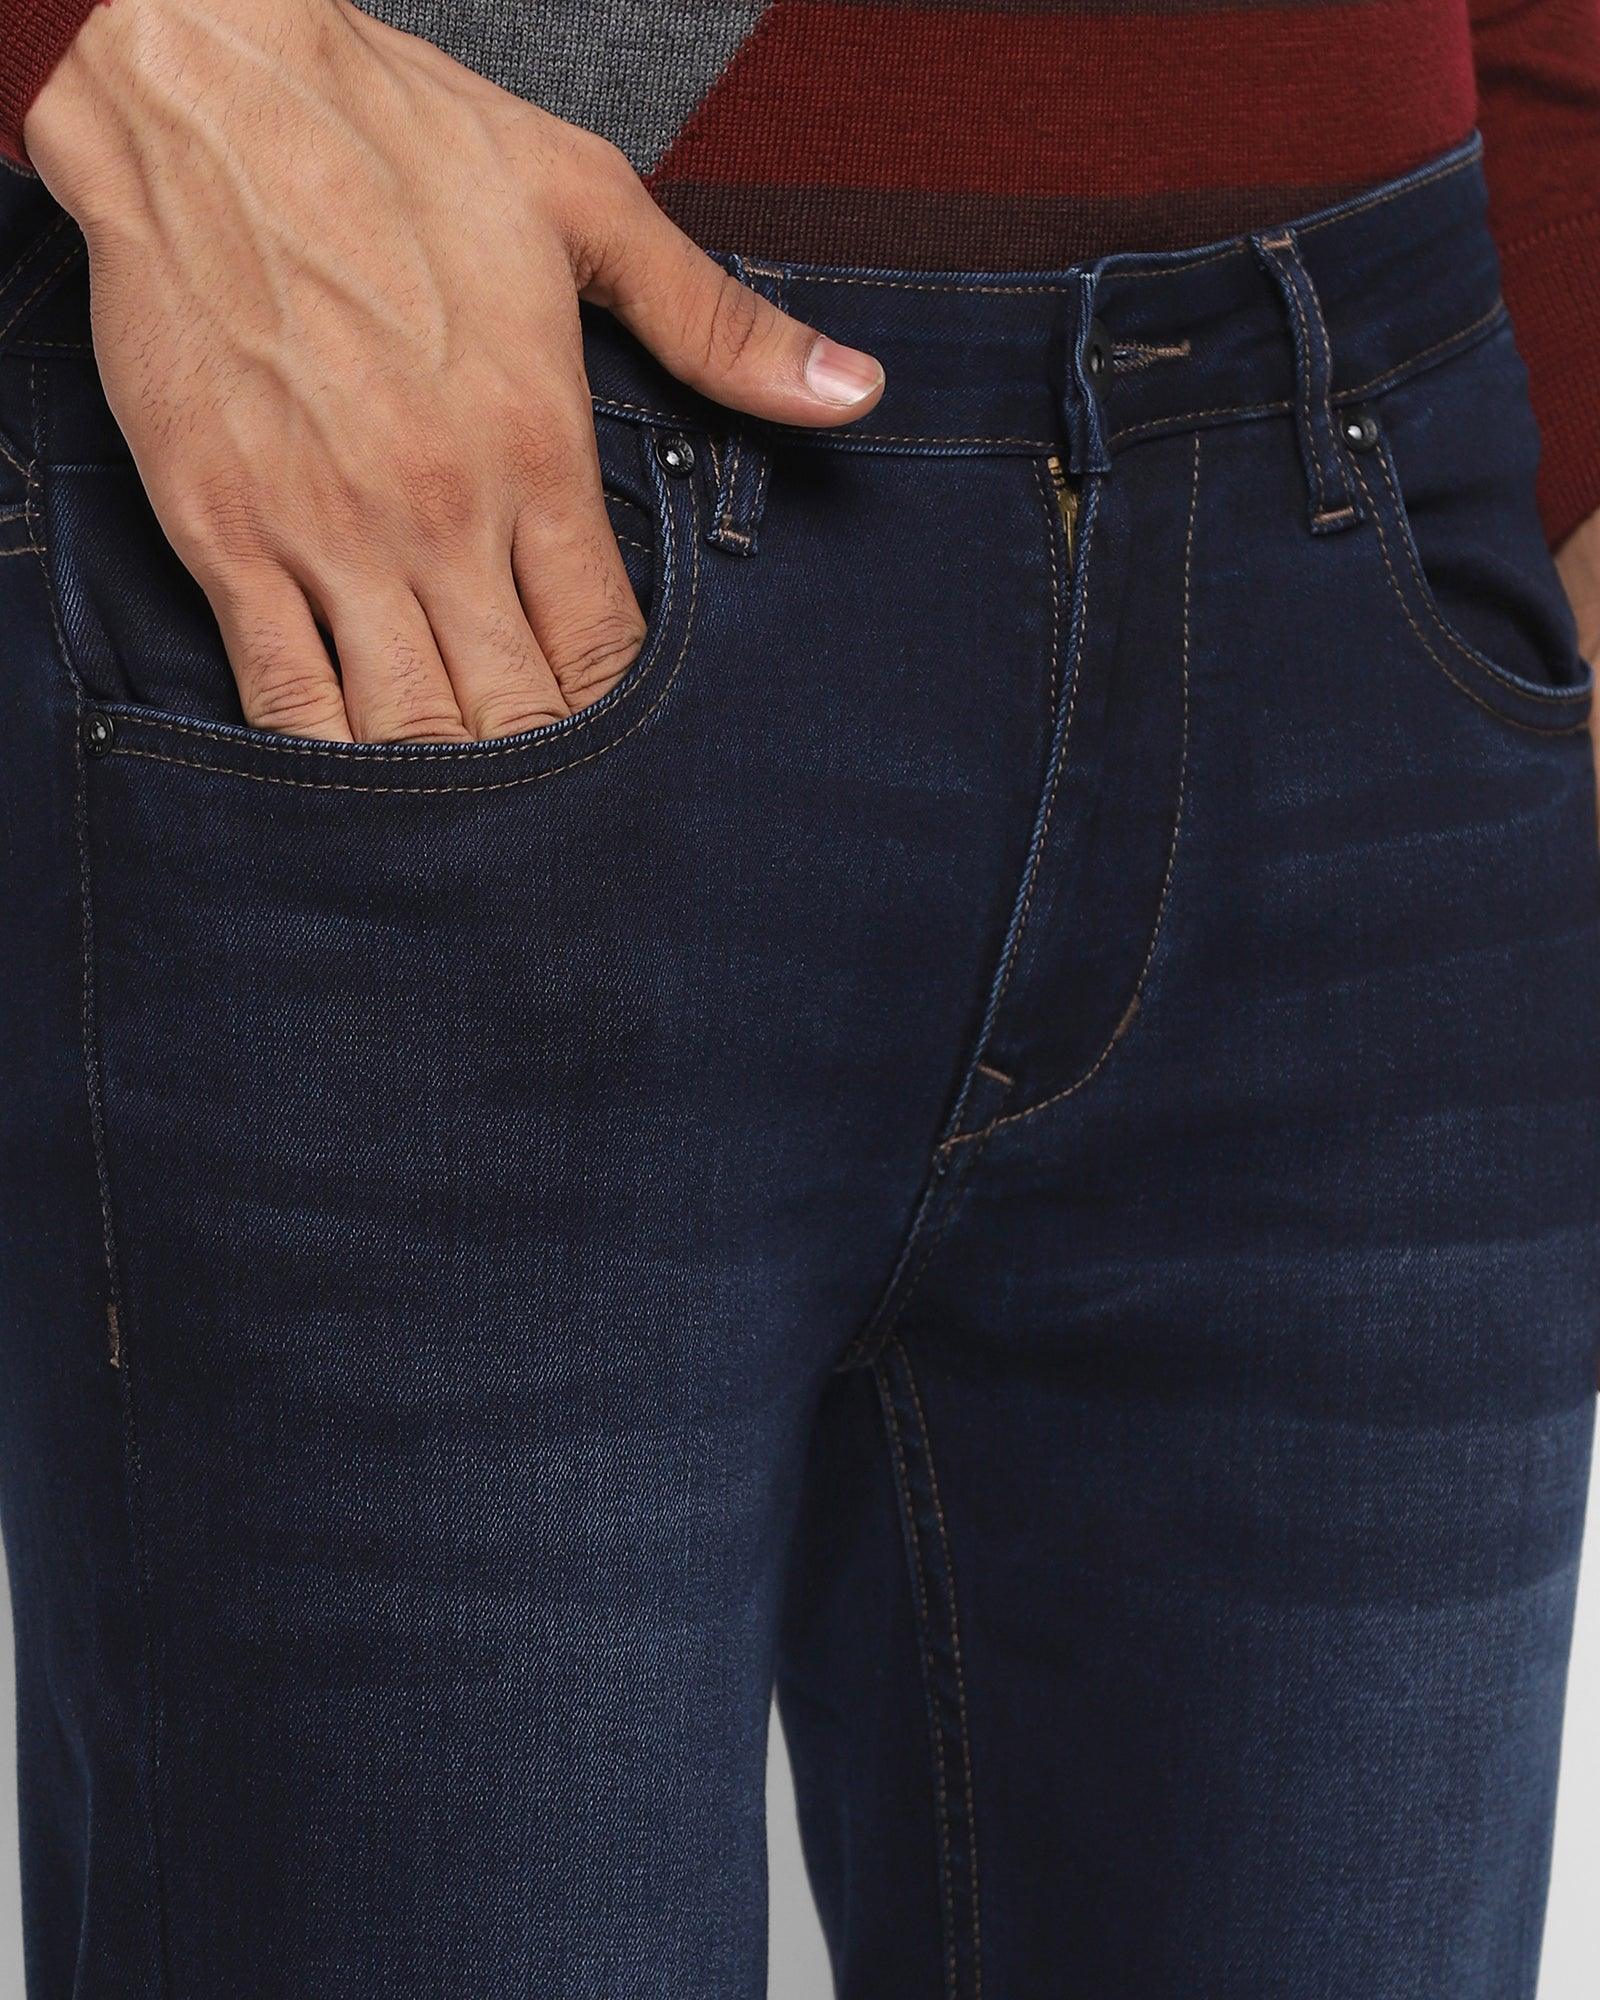 Super Flex Skinny Cropped Fiji Fit Indigo Jeans - Dago